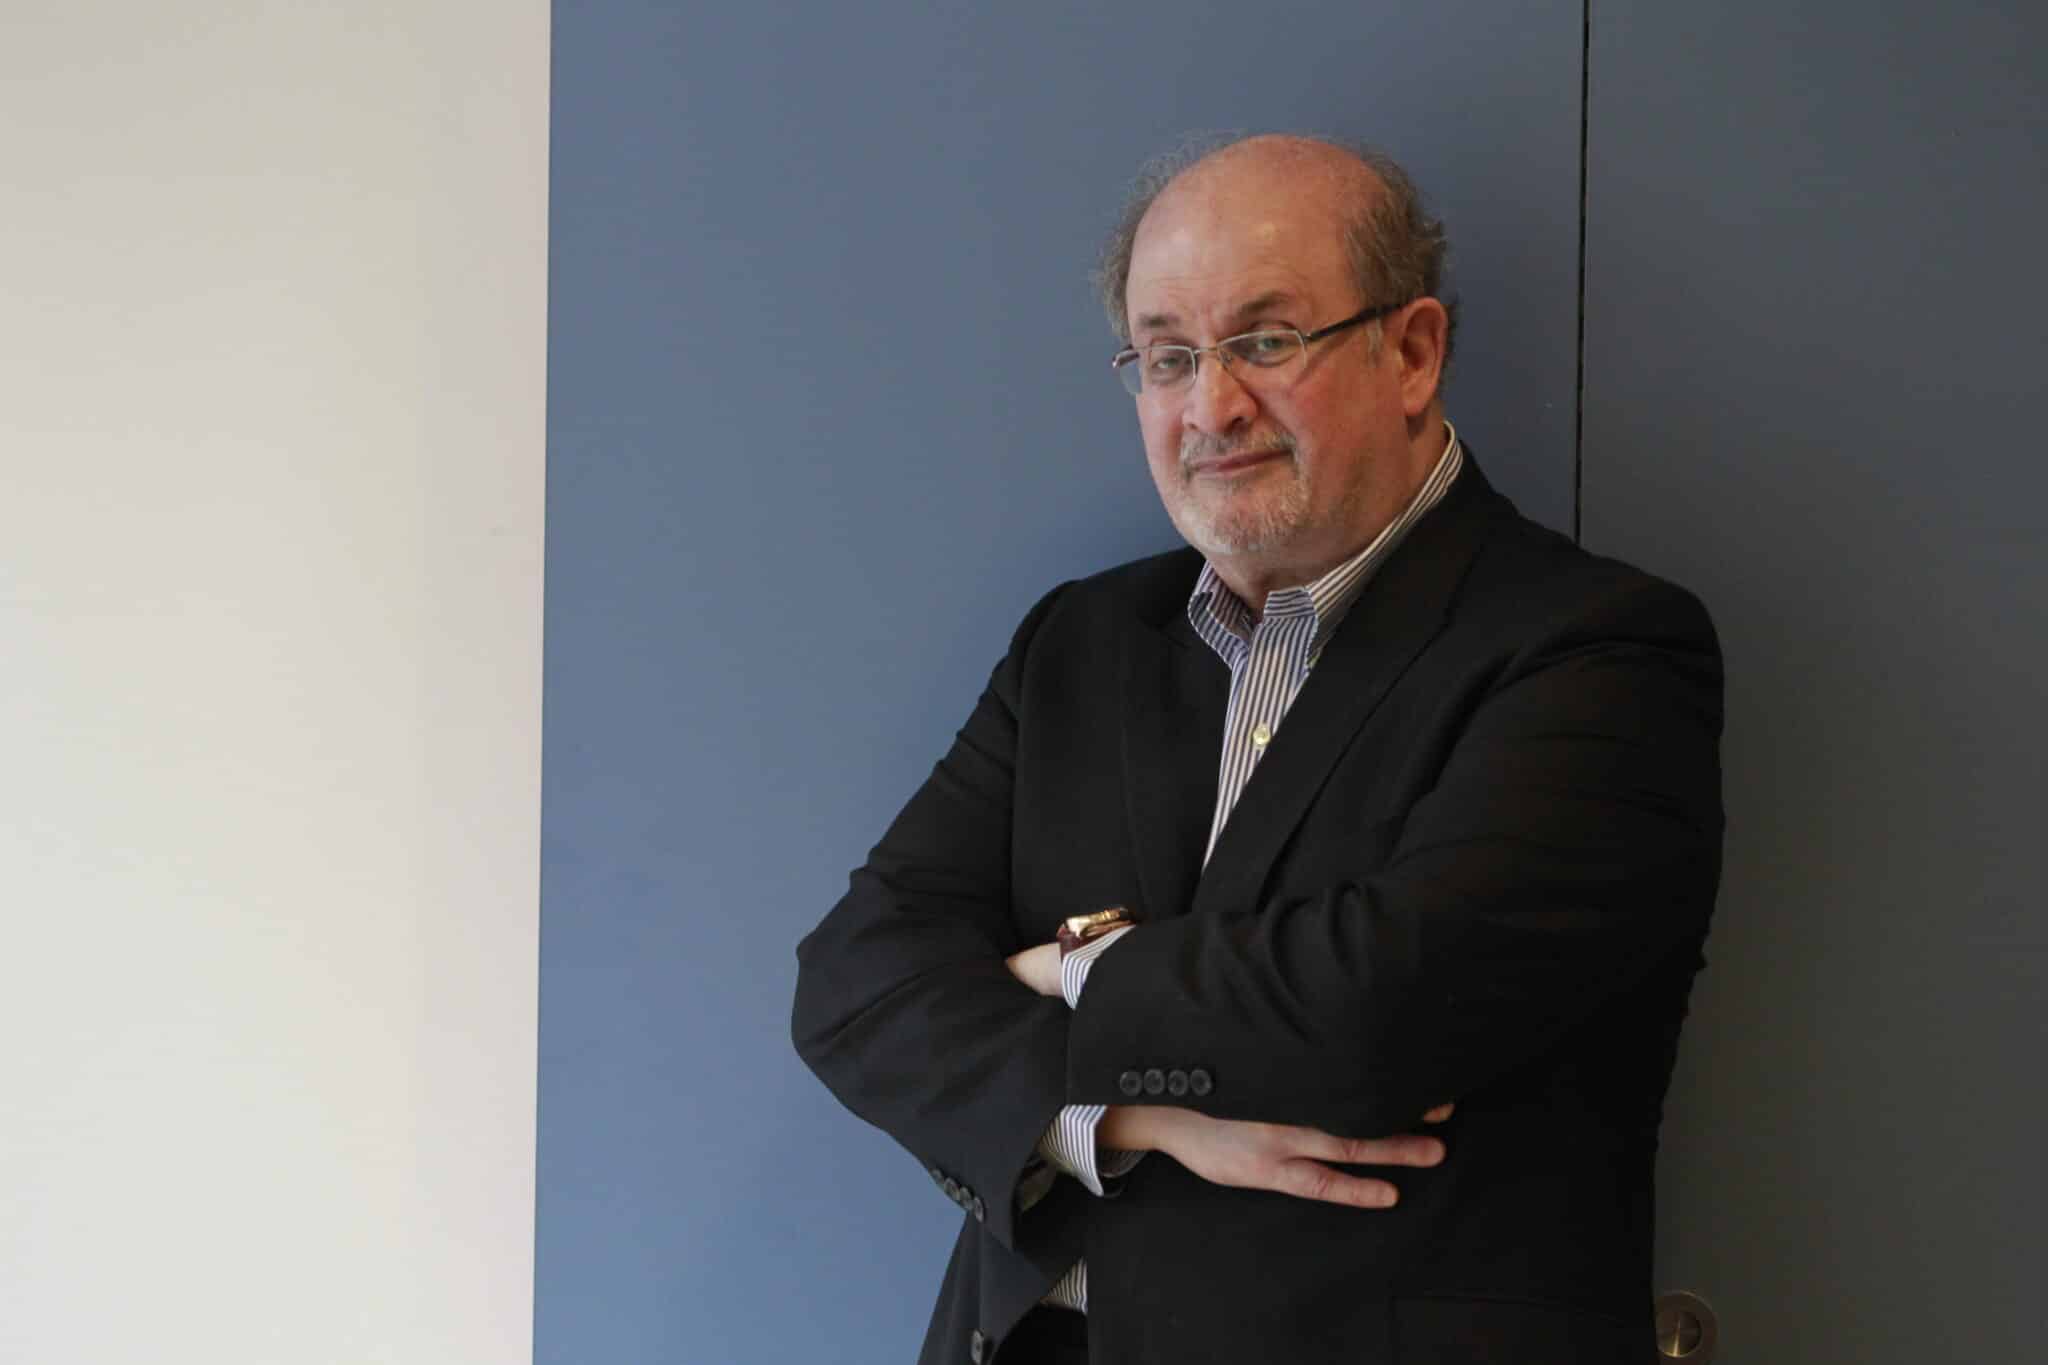 Salman Rushdie recupera el habla tras retirarle el respirador pese a seguir en "estado crítico"